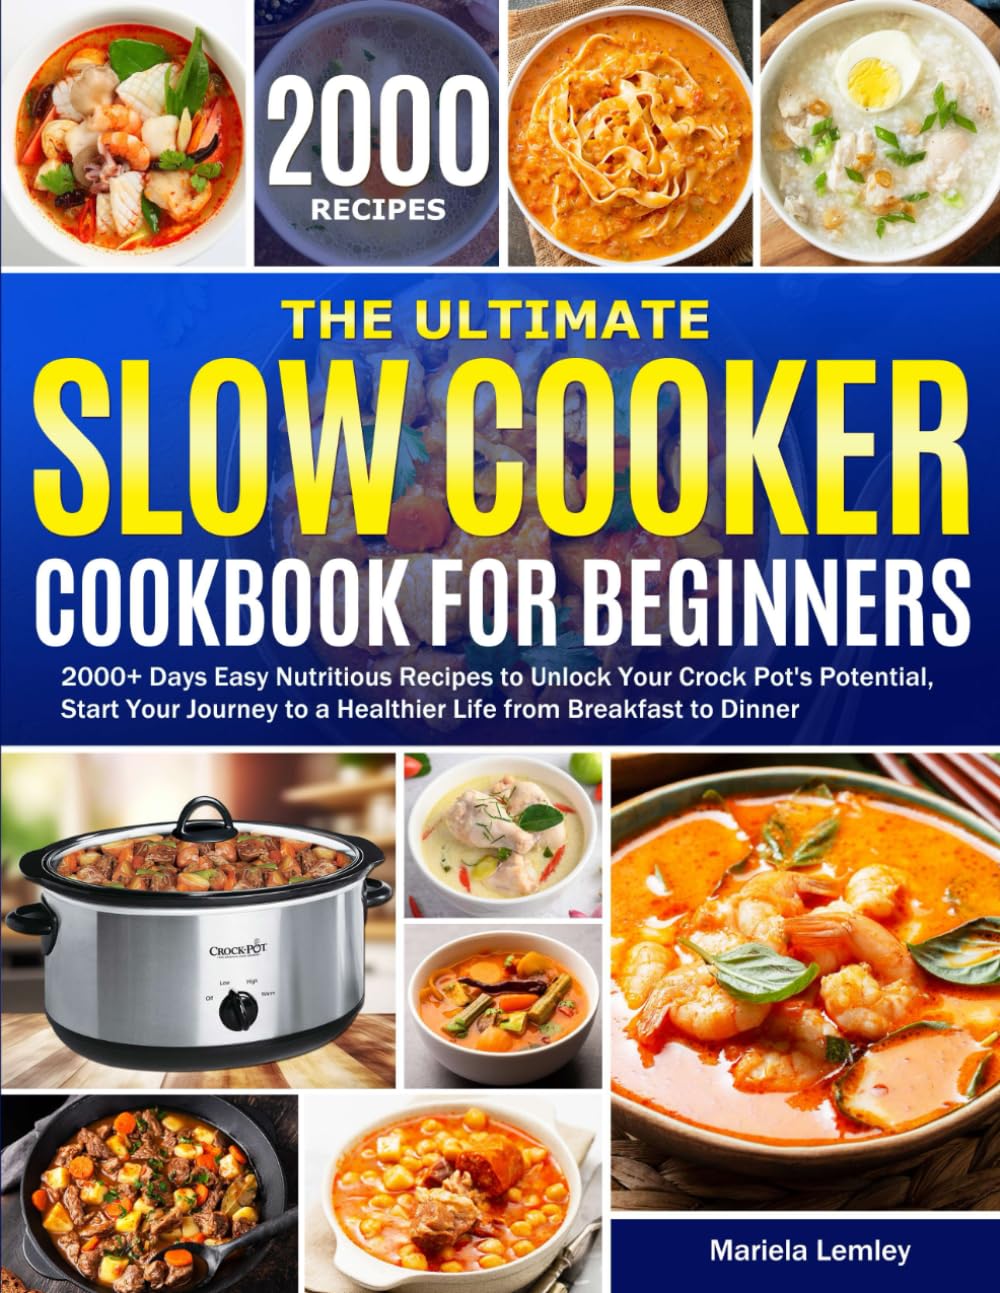 Crock Pot Cookbook Review